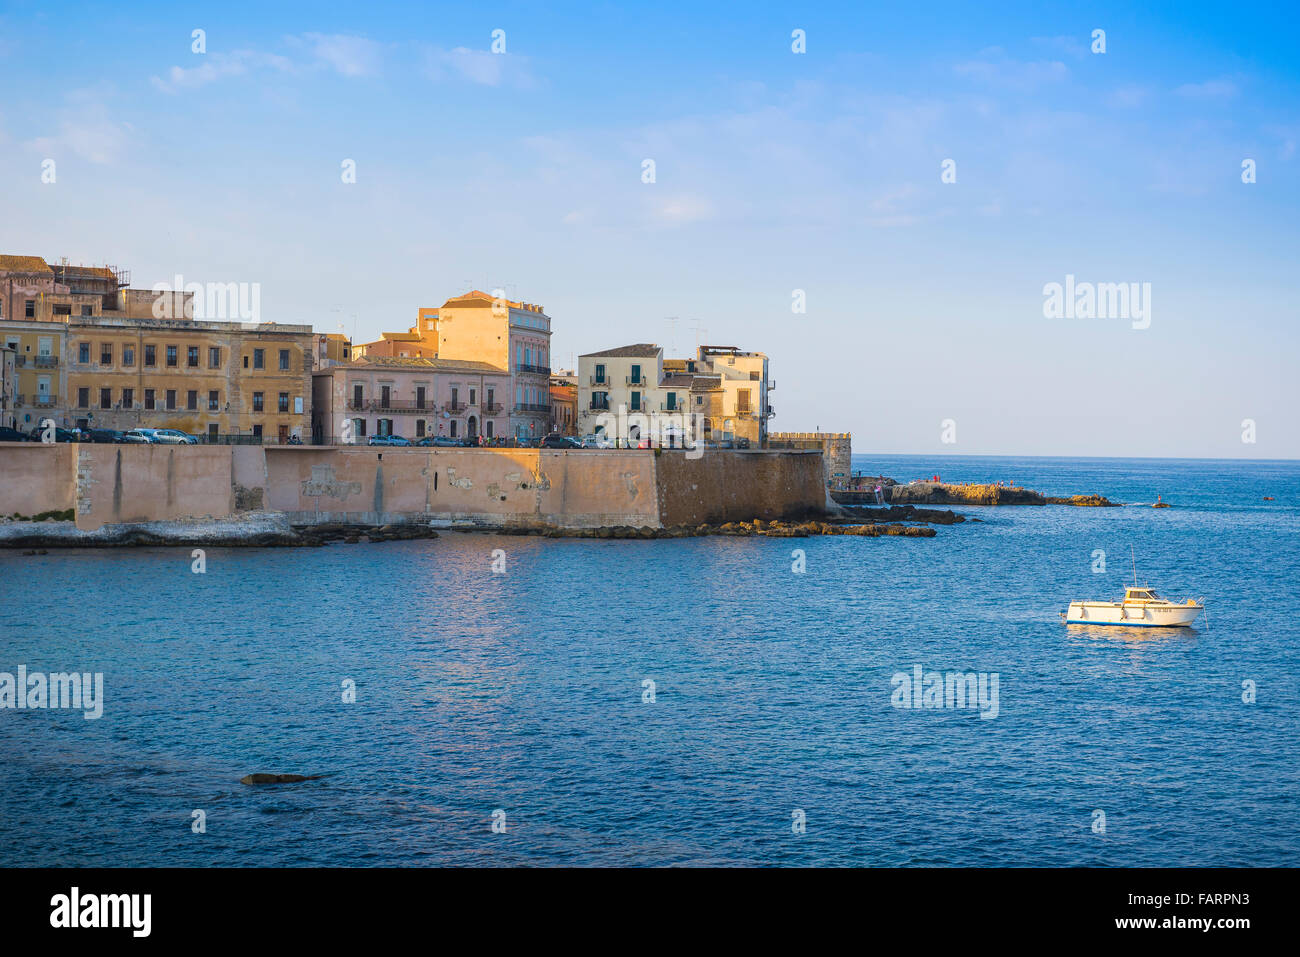 Siracusa Sicilia puerto puerto, vista al atardecer de una pequeña embarcación de ocio en el lado oriental de la isla de Ortigia, Siracusa, Sicilia. Foto de stock